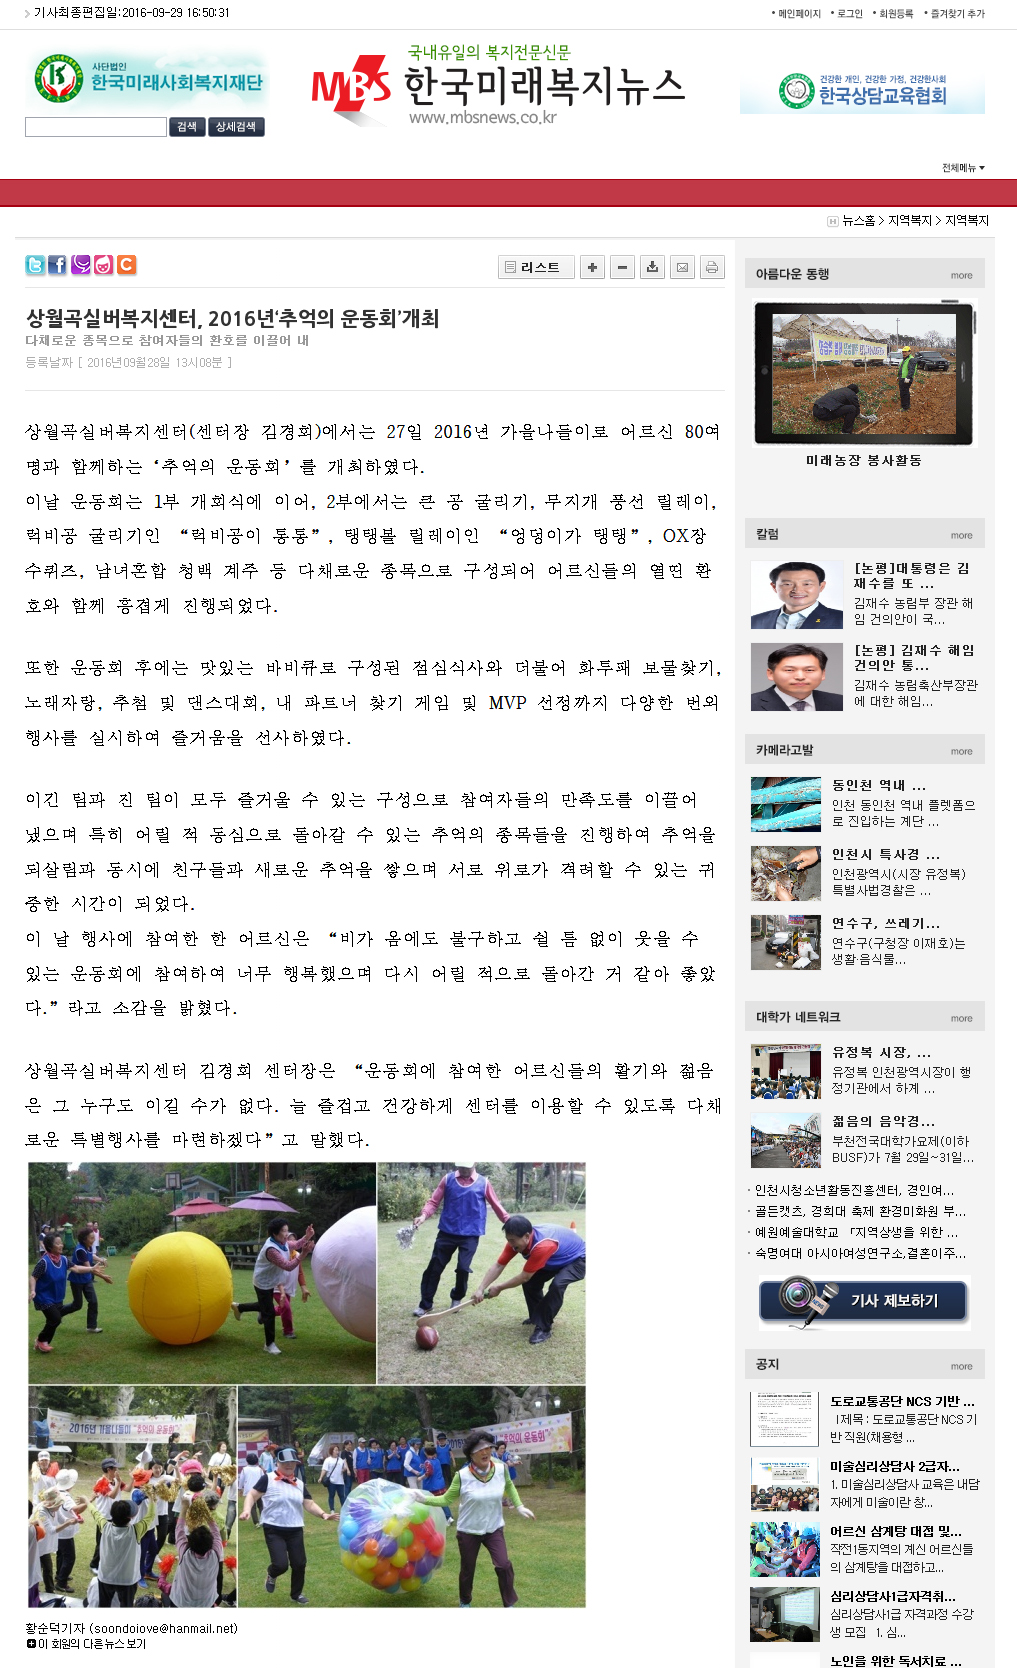 (0928)추억의운동회(한국미래복지뉴스).jpg